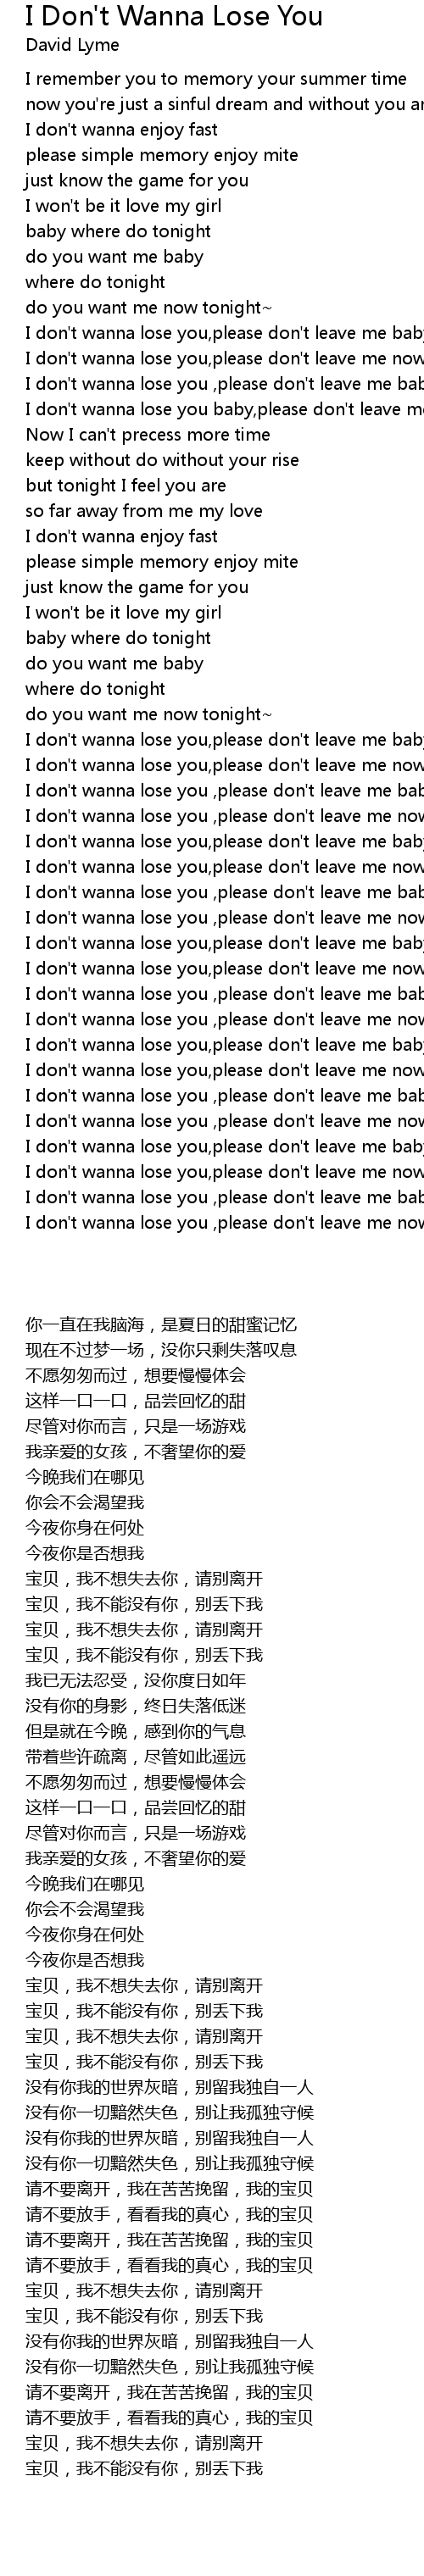 If i lose you baby lyrics